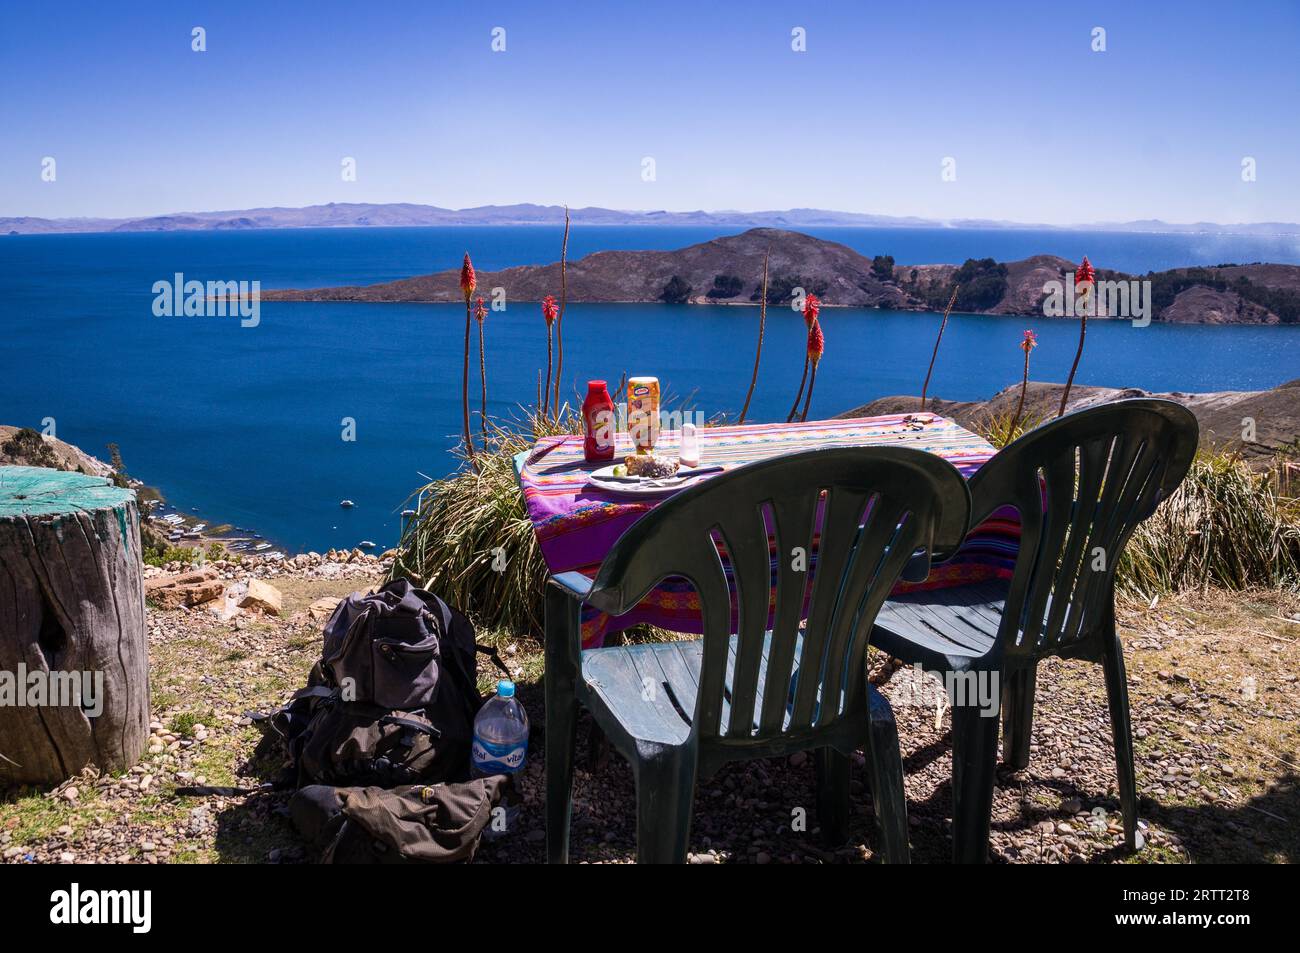 Déjeuner à Isla de sol, Bolivie : table de restaurant et chaise avec vue sur le lac Titicaca. Isla de sol était un lieu sacré pour les Incas Banque D'Images